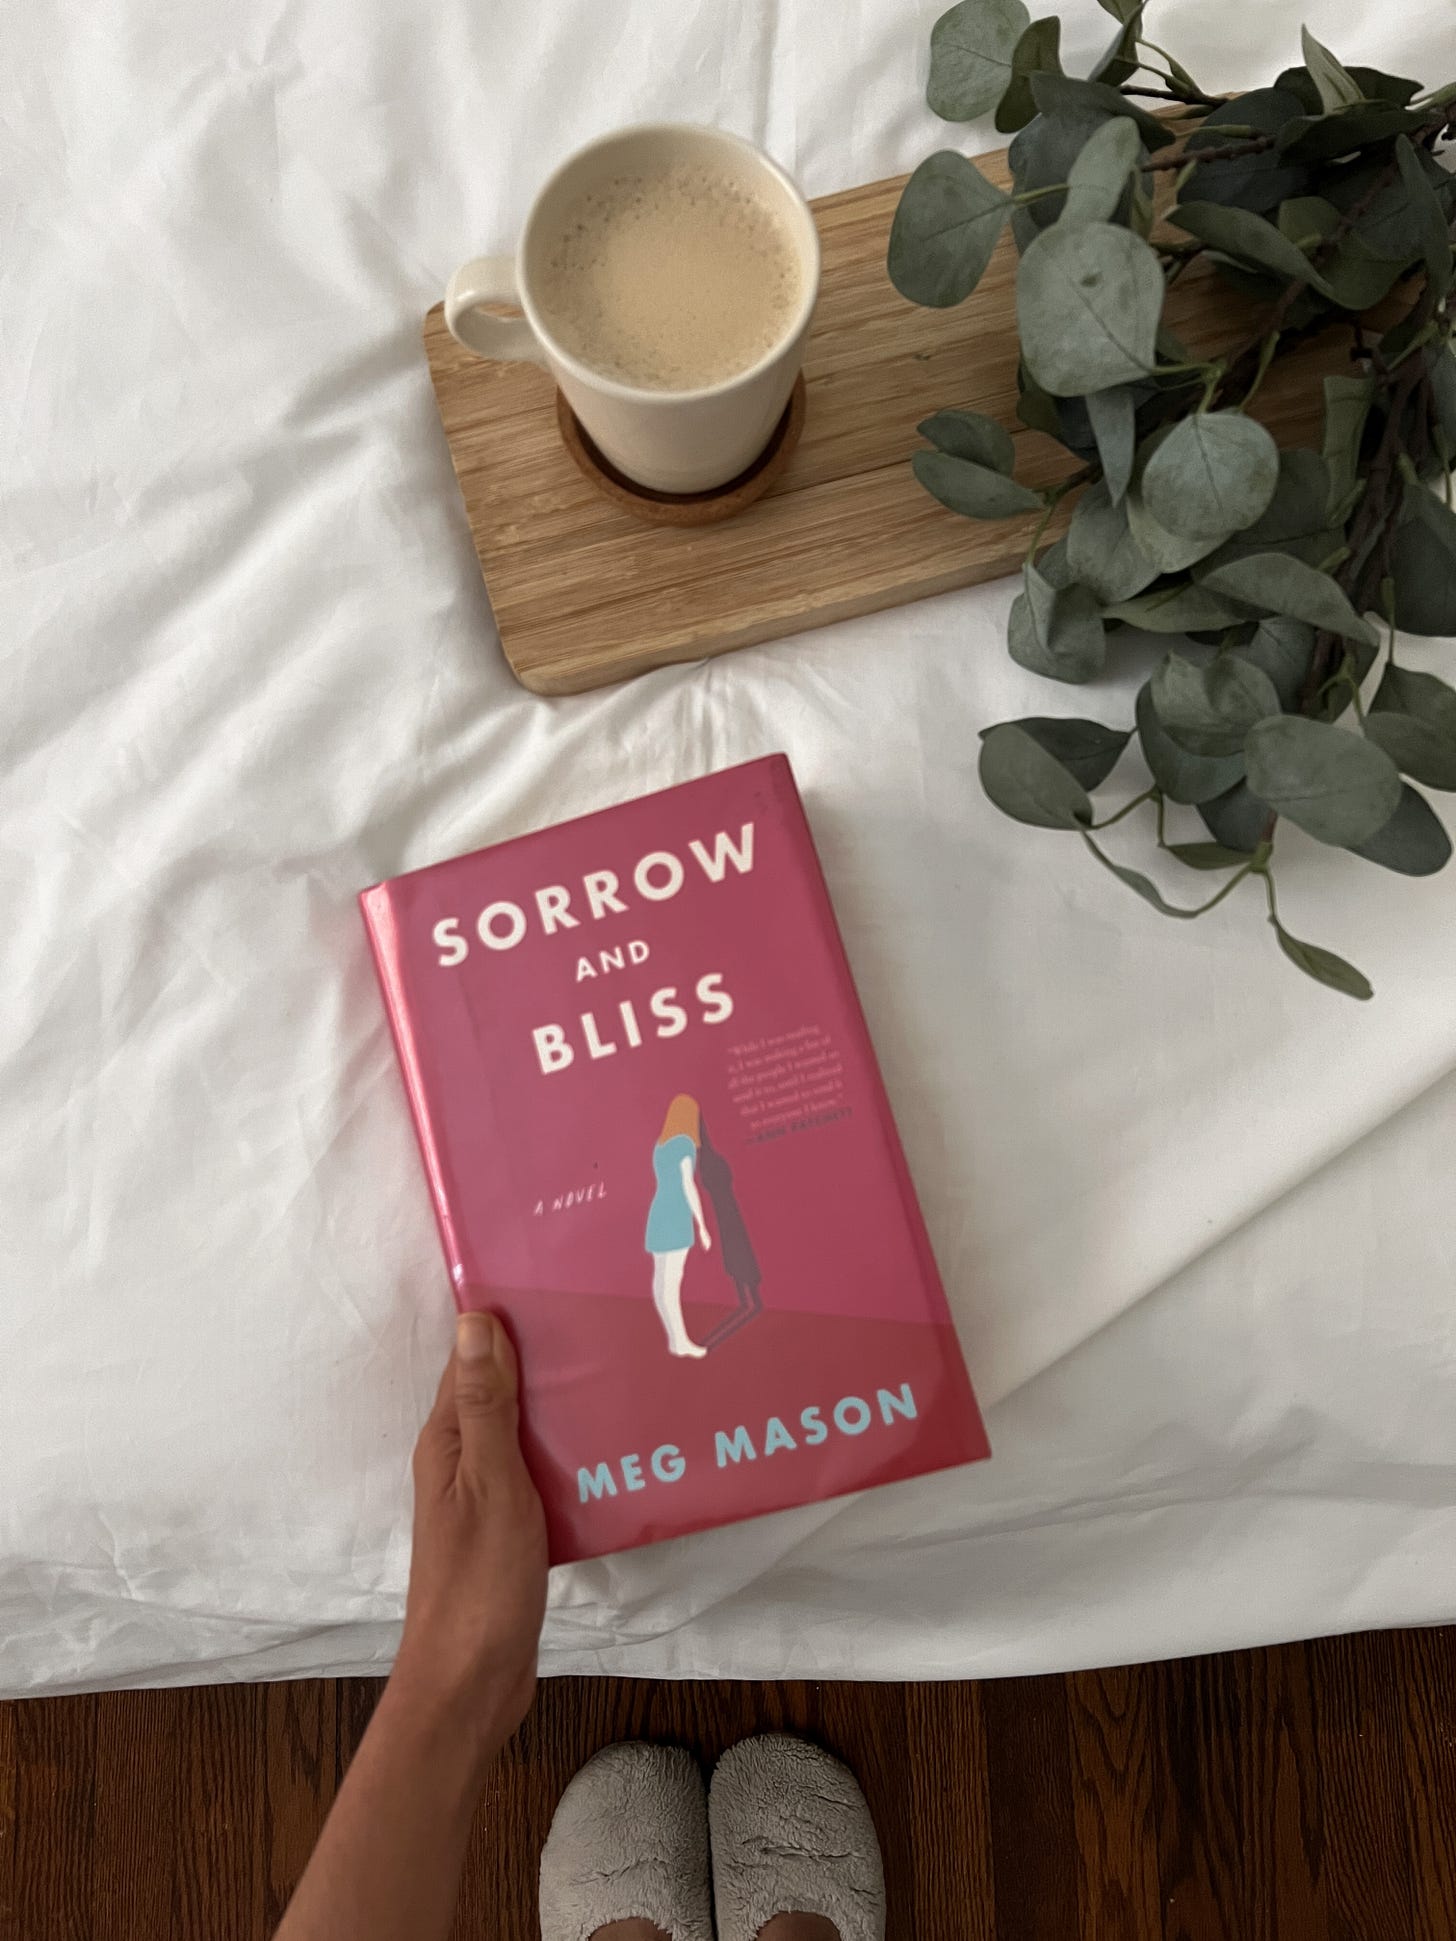 Sorrow and bliss by Meg Mason